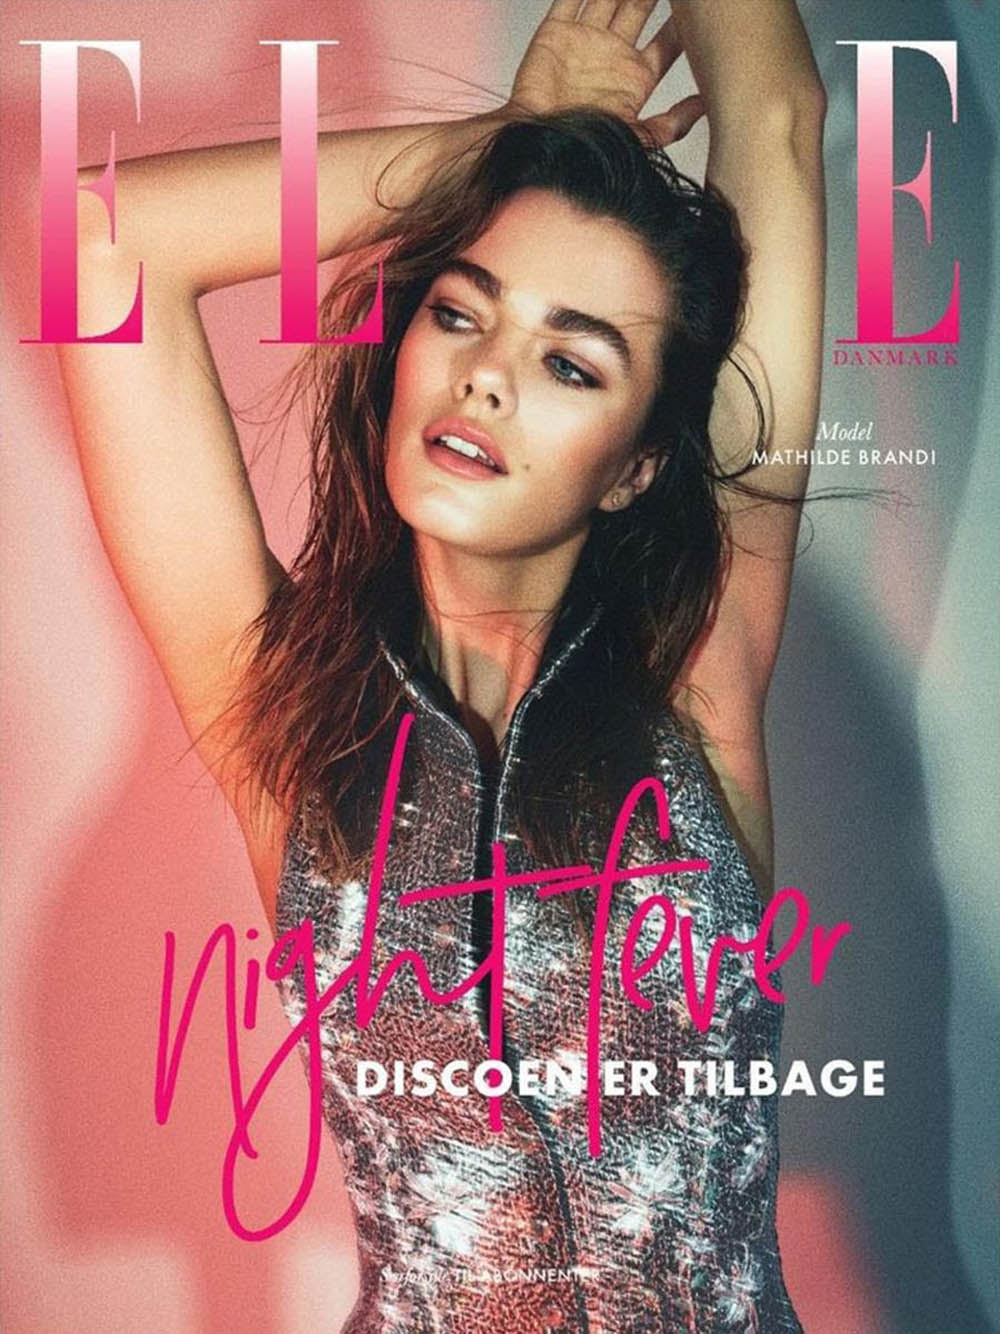 Mathilde Brandi covers Elle Denmark May 2018 by Asger Mortensen